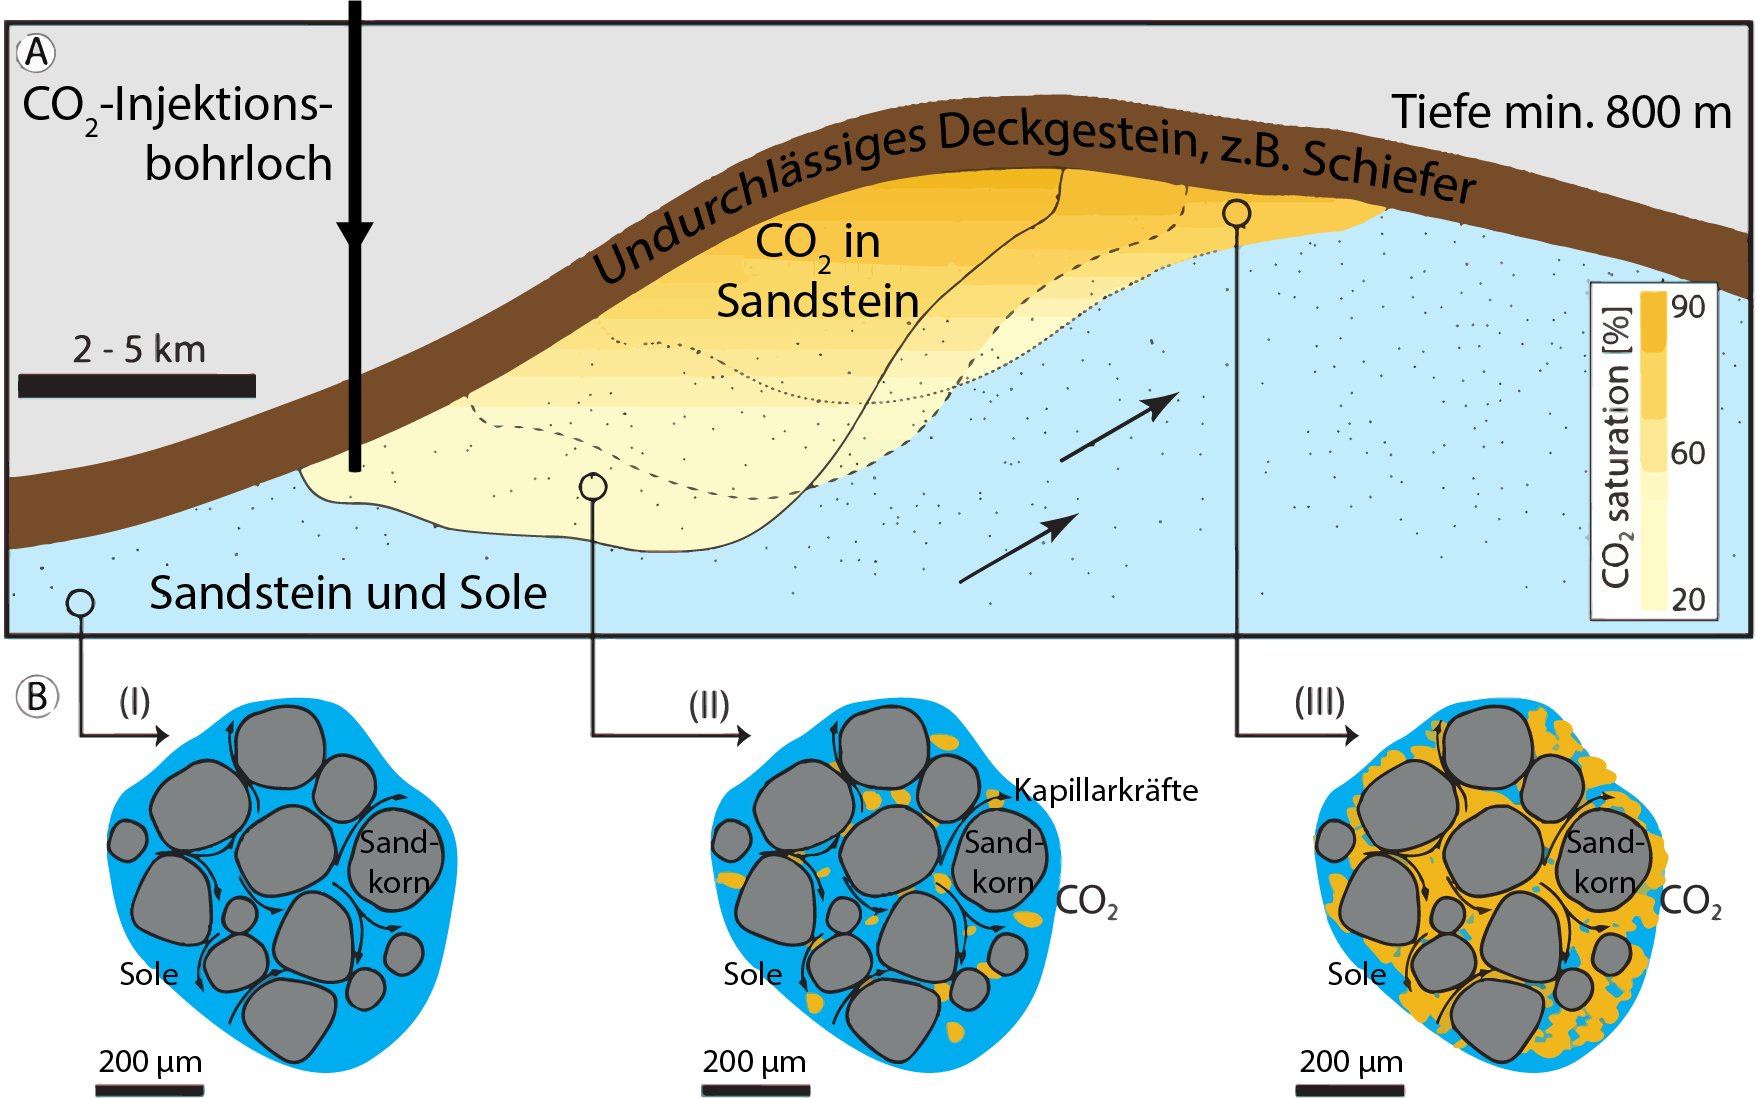 CO2 Sandstein